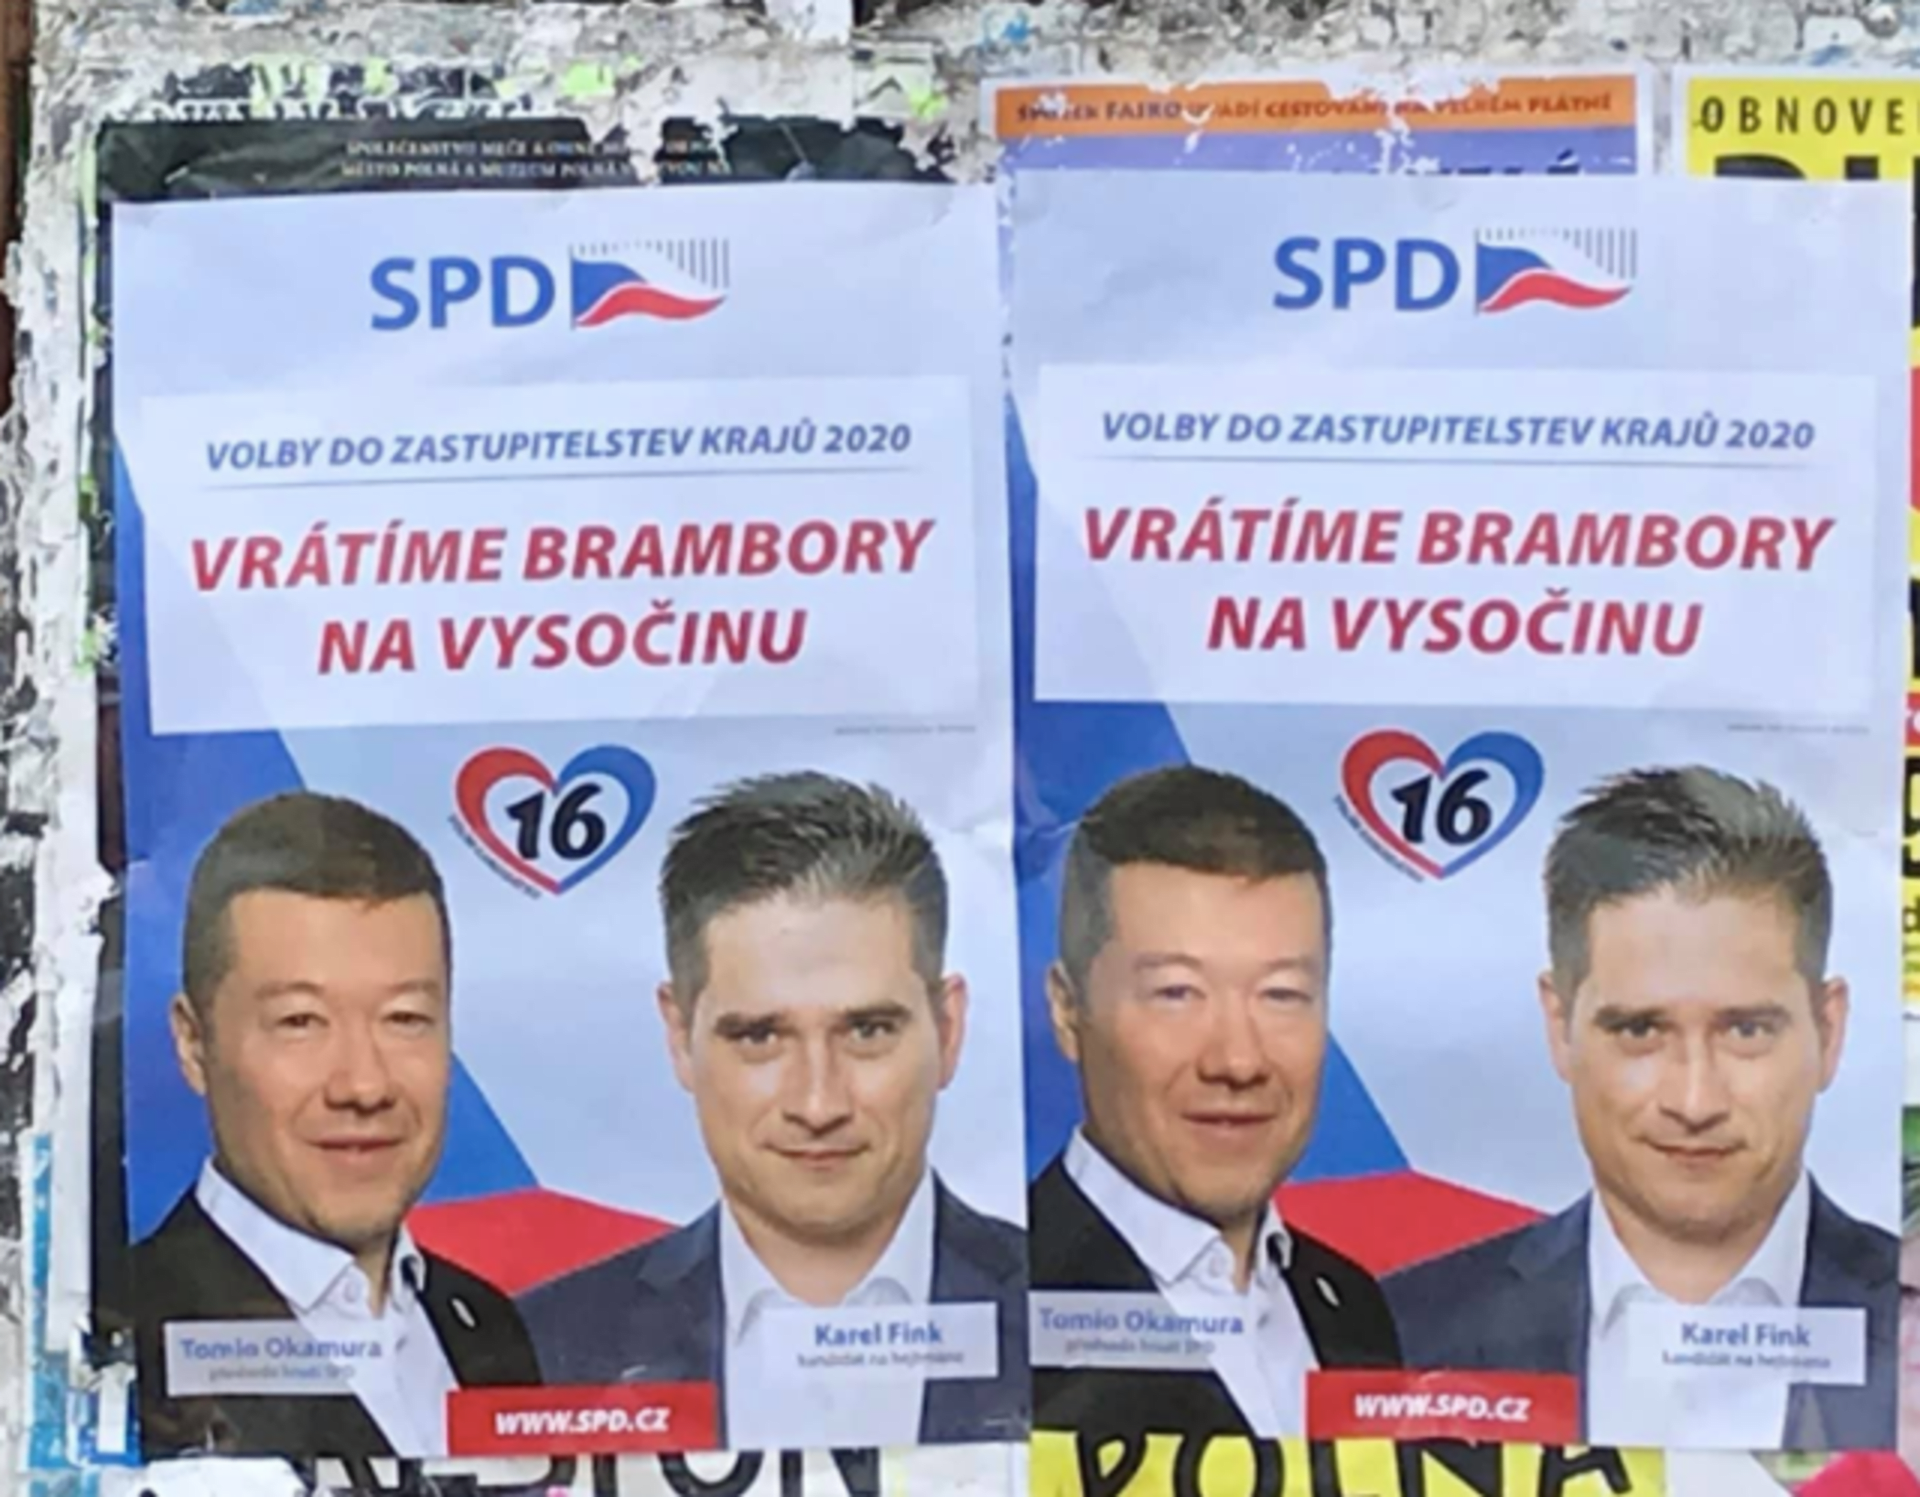 „Vrátíme brambory na Vysočinu,“ láká potenciální voliče Tomio Okamura se svým hnutím SPD v Kraji Vysočina. Plakát ovšem působí, že těmi bramborami je právě on a jeho stranický kolega, se kterým je předseda hnutí na plakátě zvěčněn.